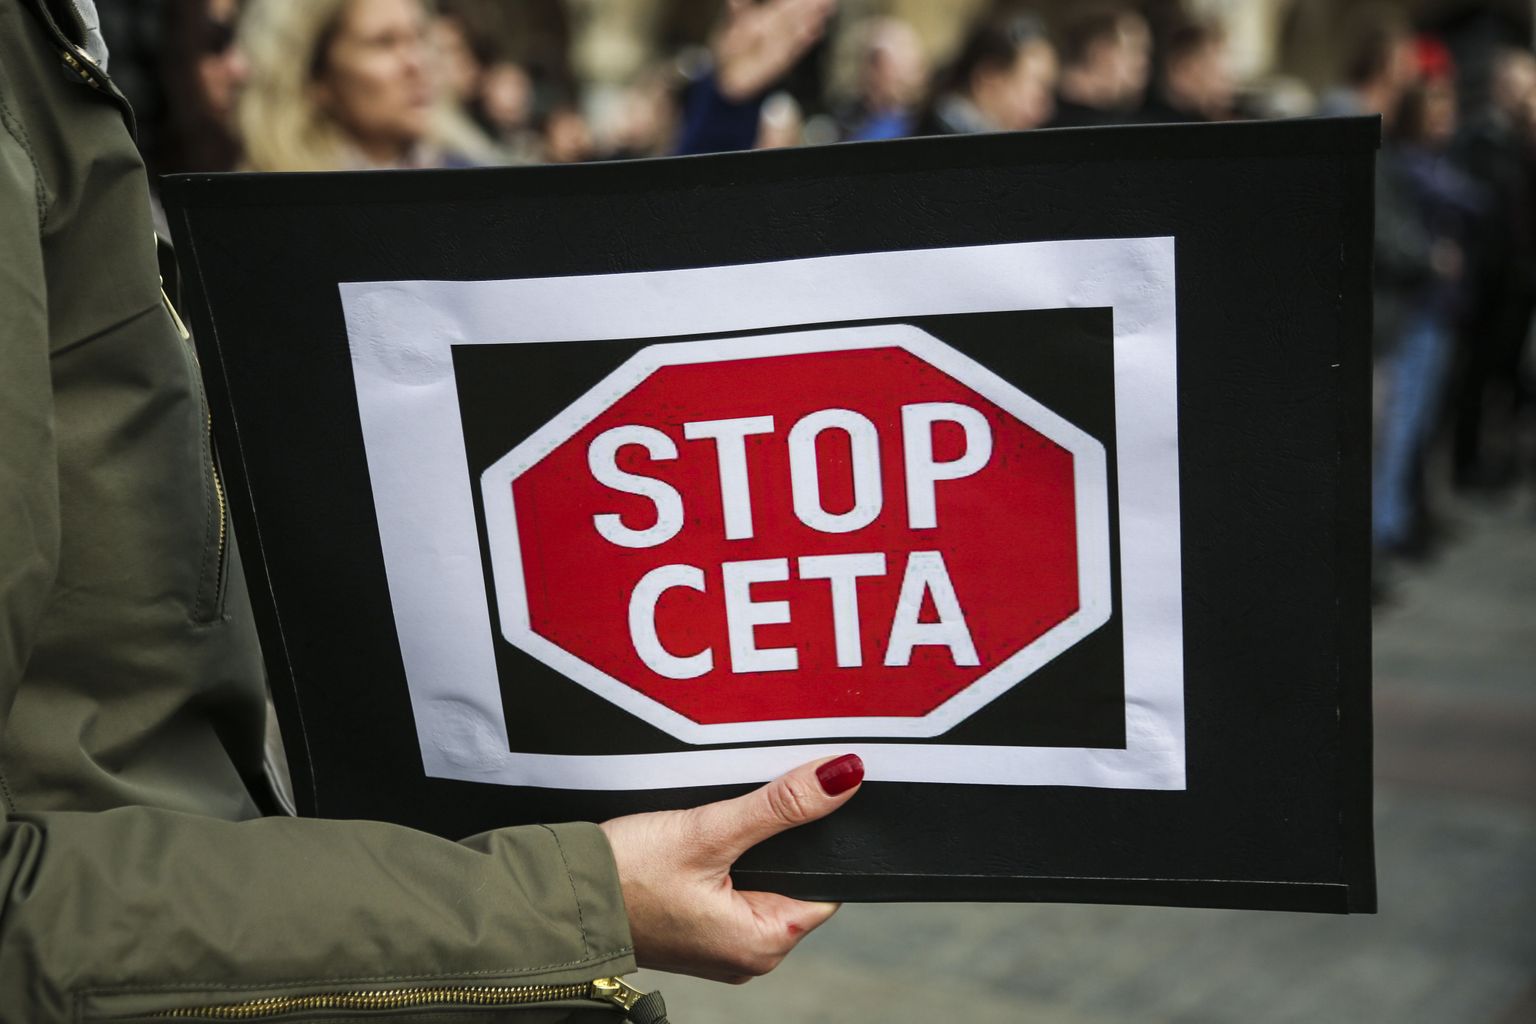 Peatage CETA, kuulutab protestija plakat Poolas Krakówis ülemöödunud nädalal toimunud meeleavaldusel.